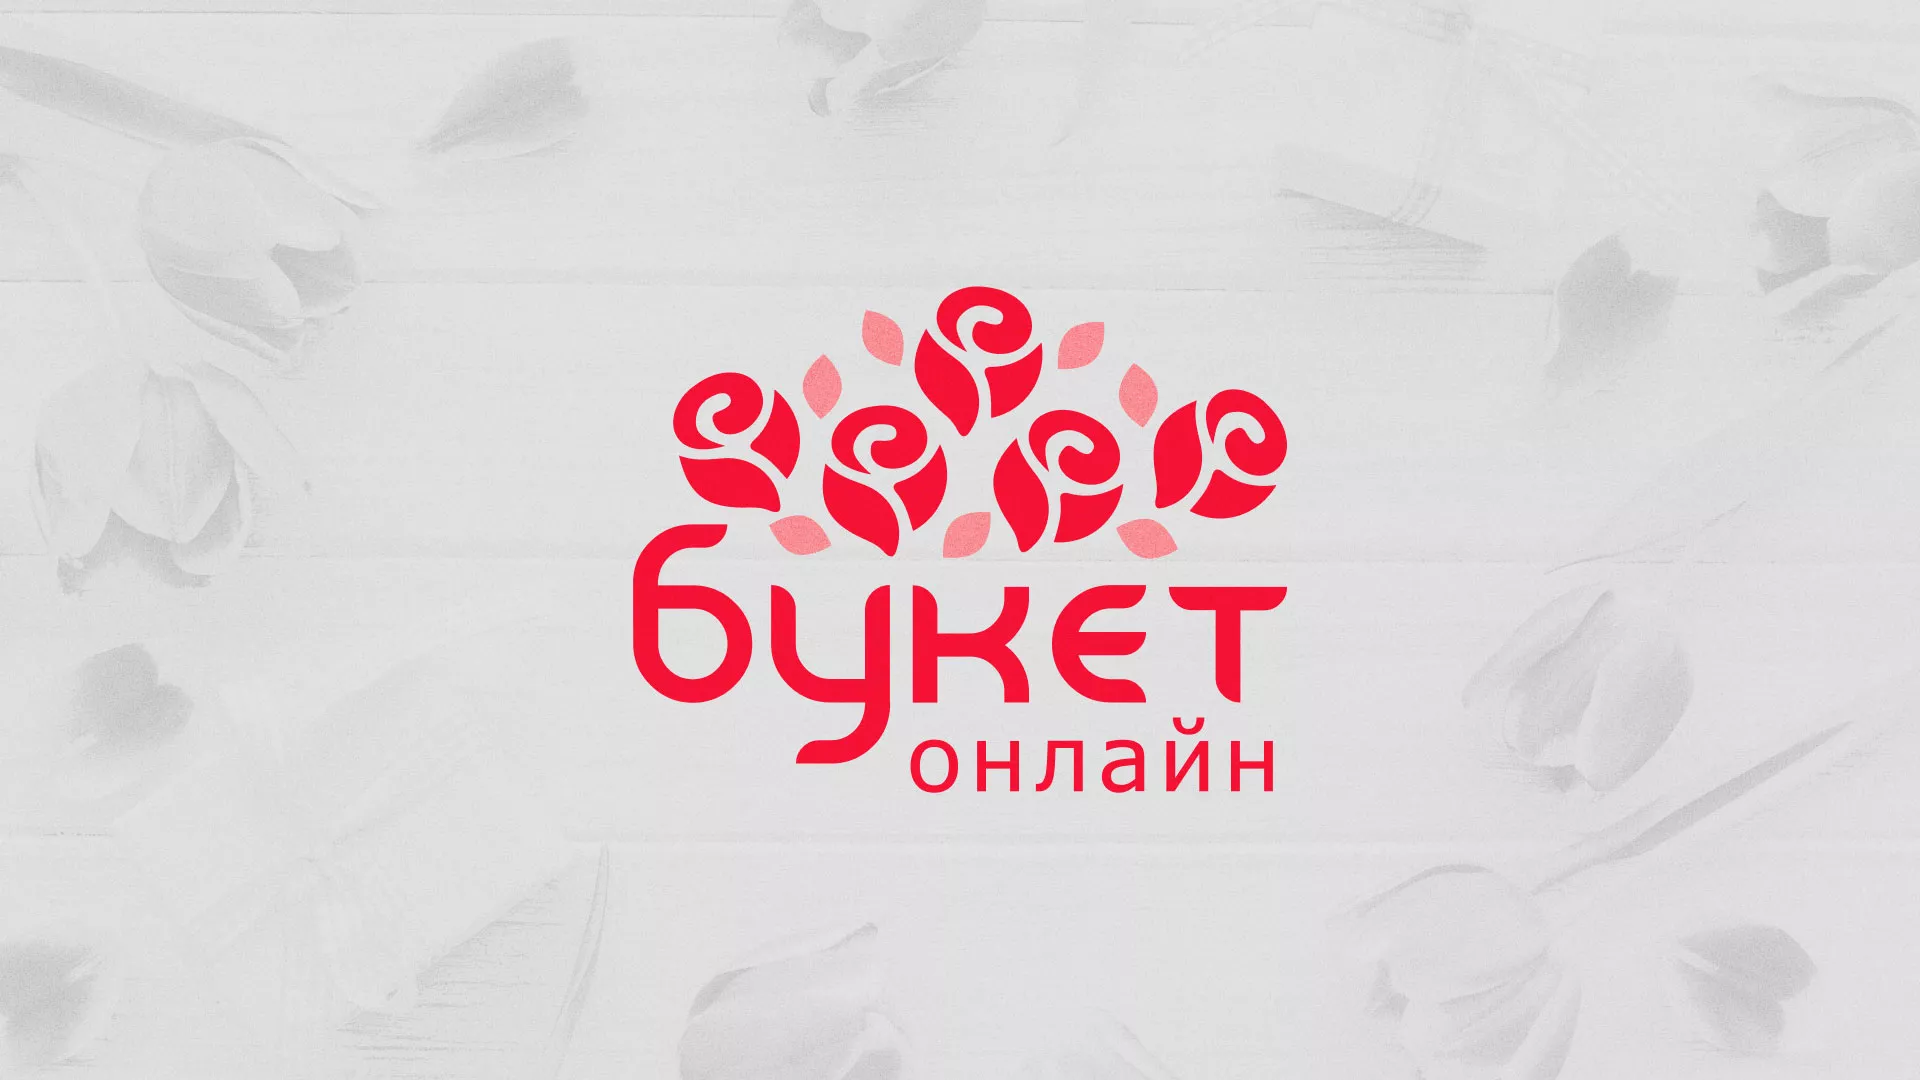 Создание интернет-магазина «Букет-онлайн» по цветам в Сергаче